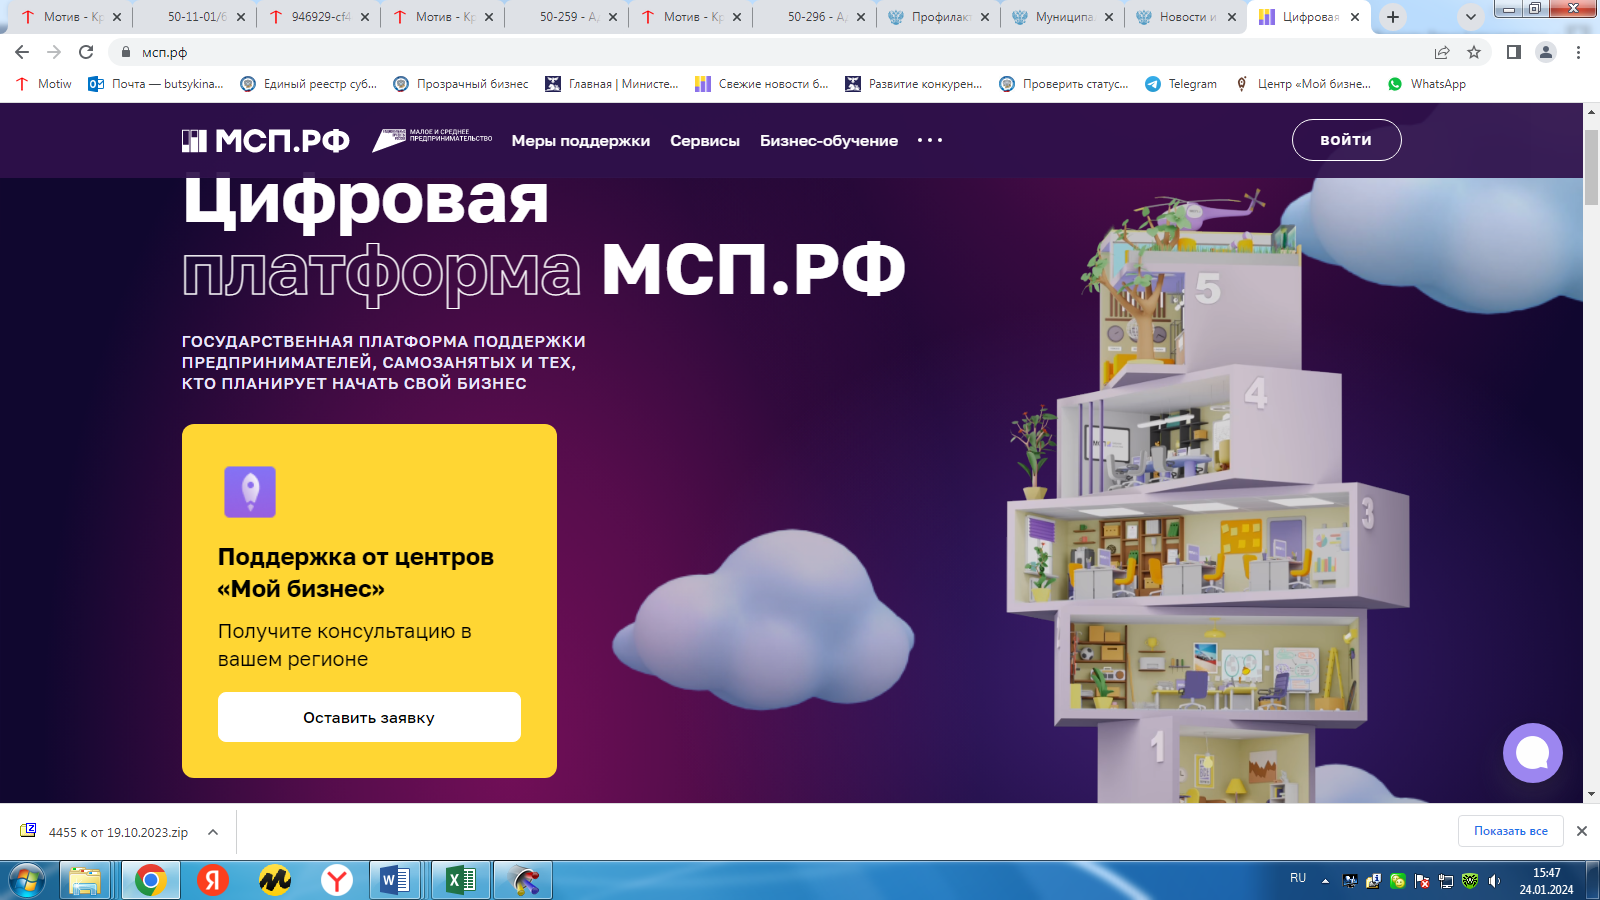 В России появилась первая единая онлайн-база льготного государственного имущества для МСП.